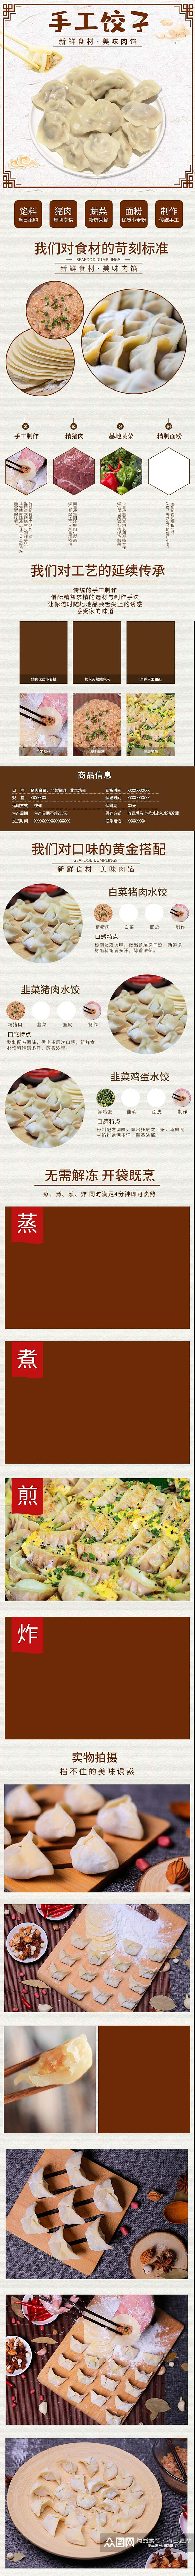 手工饺子食品电商详情页设计素材